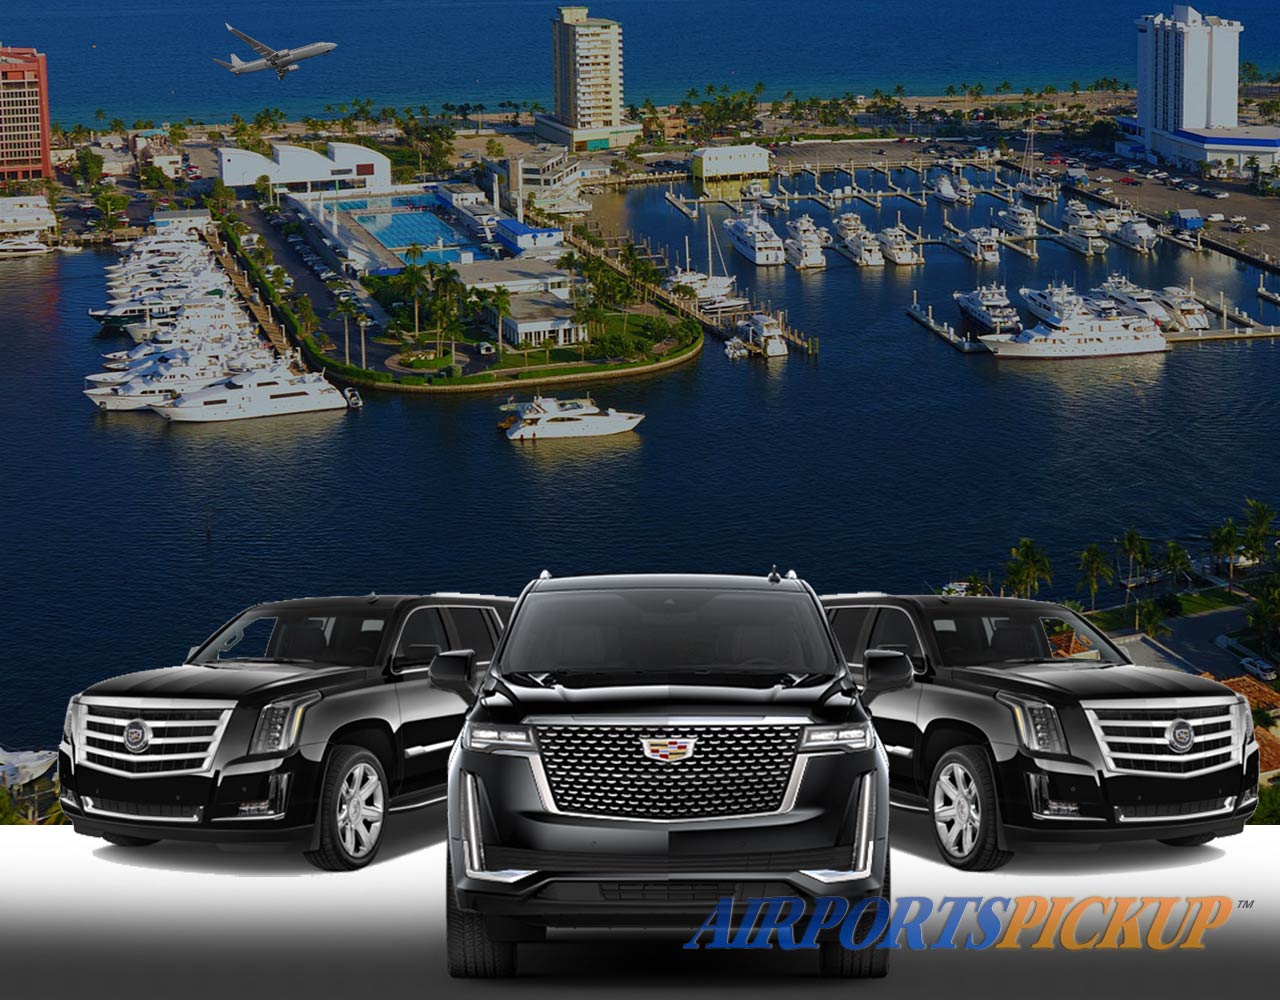 Servicios de Limusina y Black Car Aeropuerto Fort Lauderdale | Alquiler de furgonetas & minibús corporativo